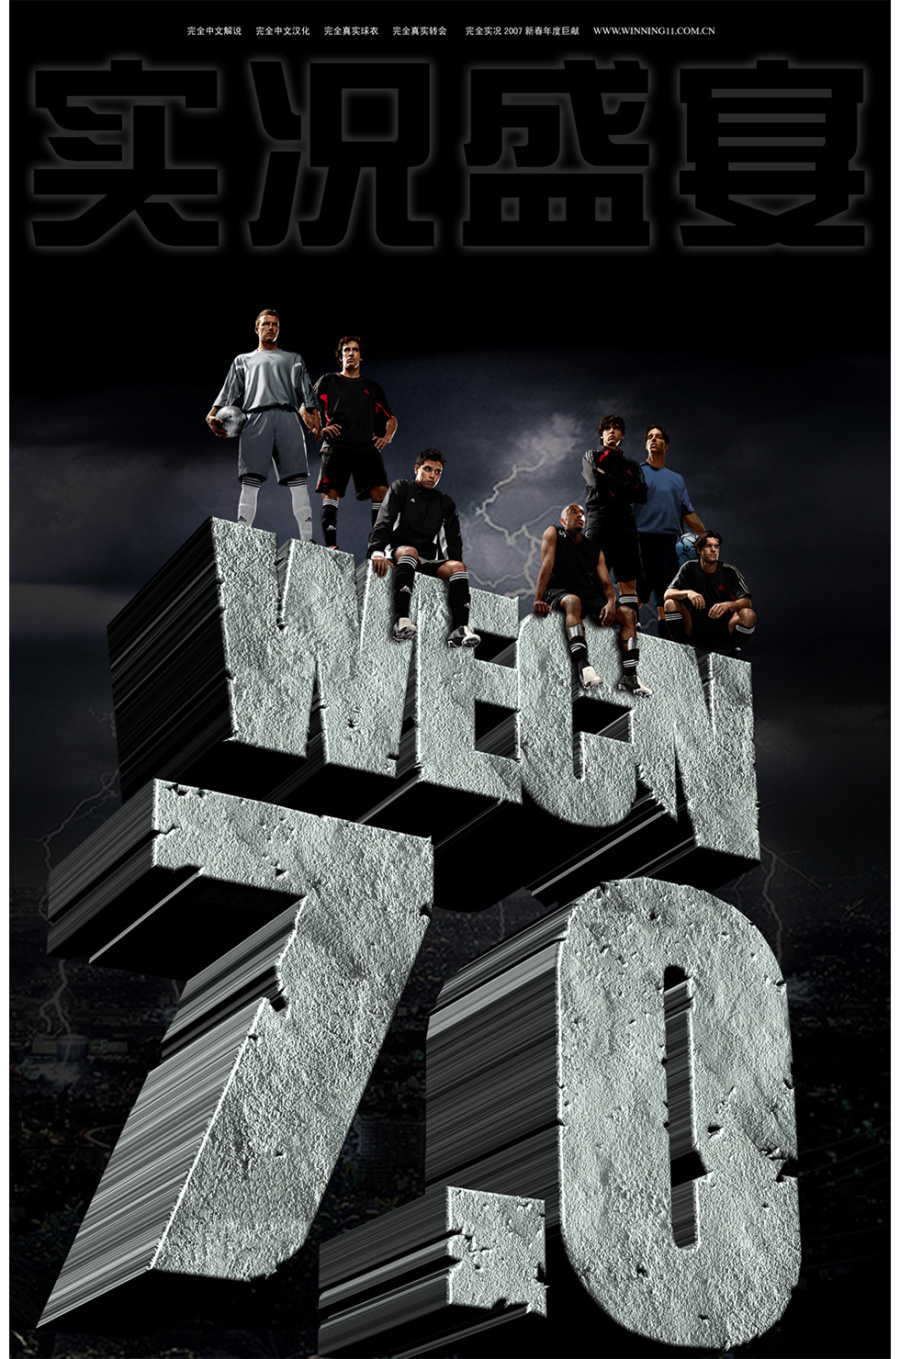 实况足球WECN历代游戏封面|海报|平面|wkt1 -